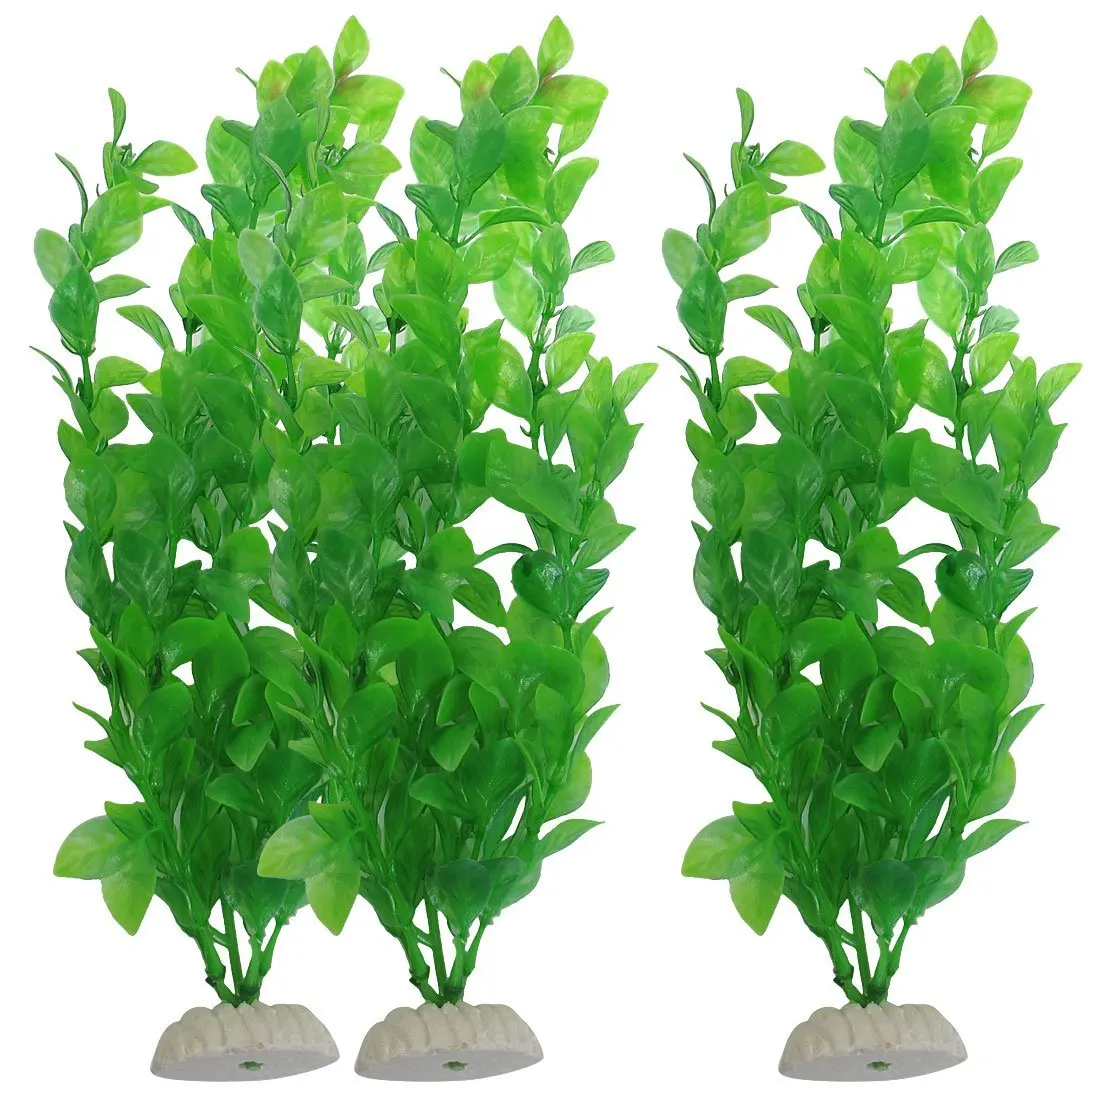 

Зеленые пластиковые искусственные растения SODIAL(R) высотой 10,6 дюйма для аквариума, 3 шт.